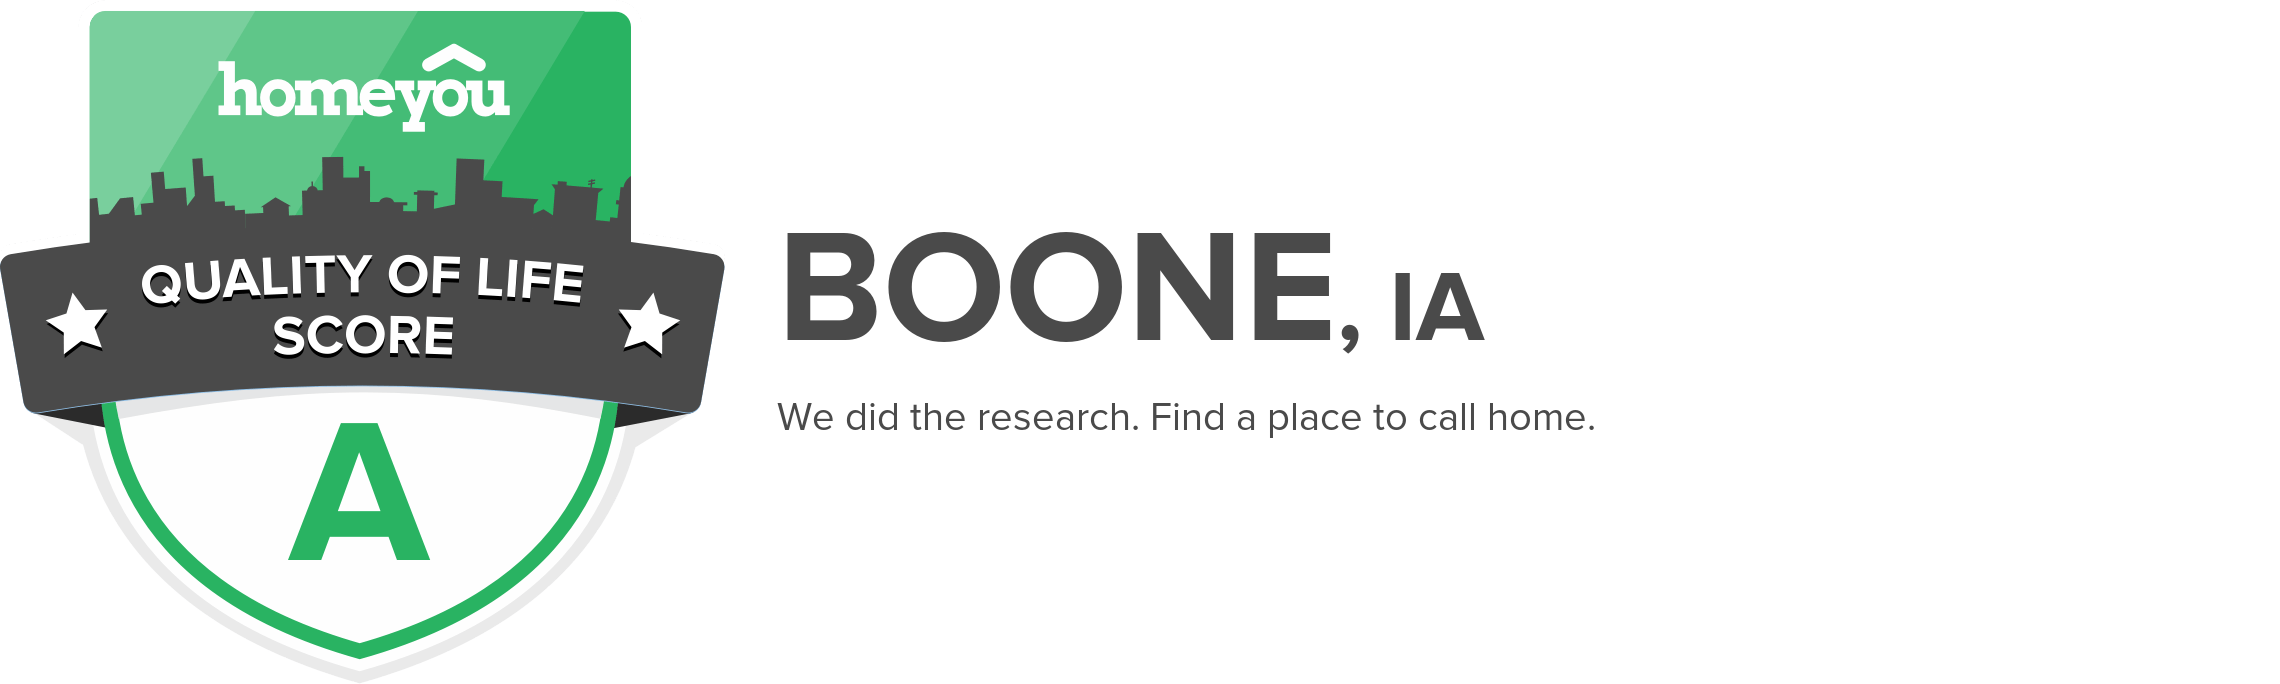 Boone, IA